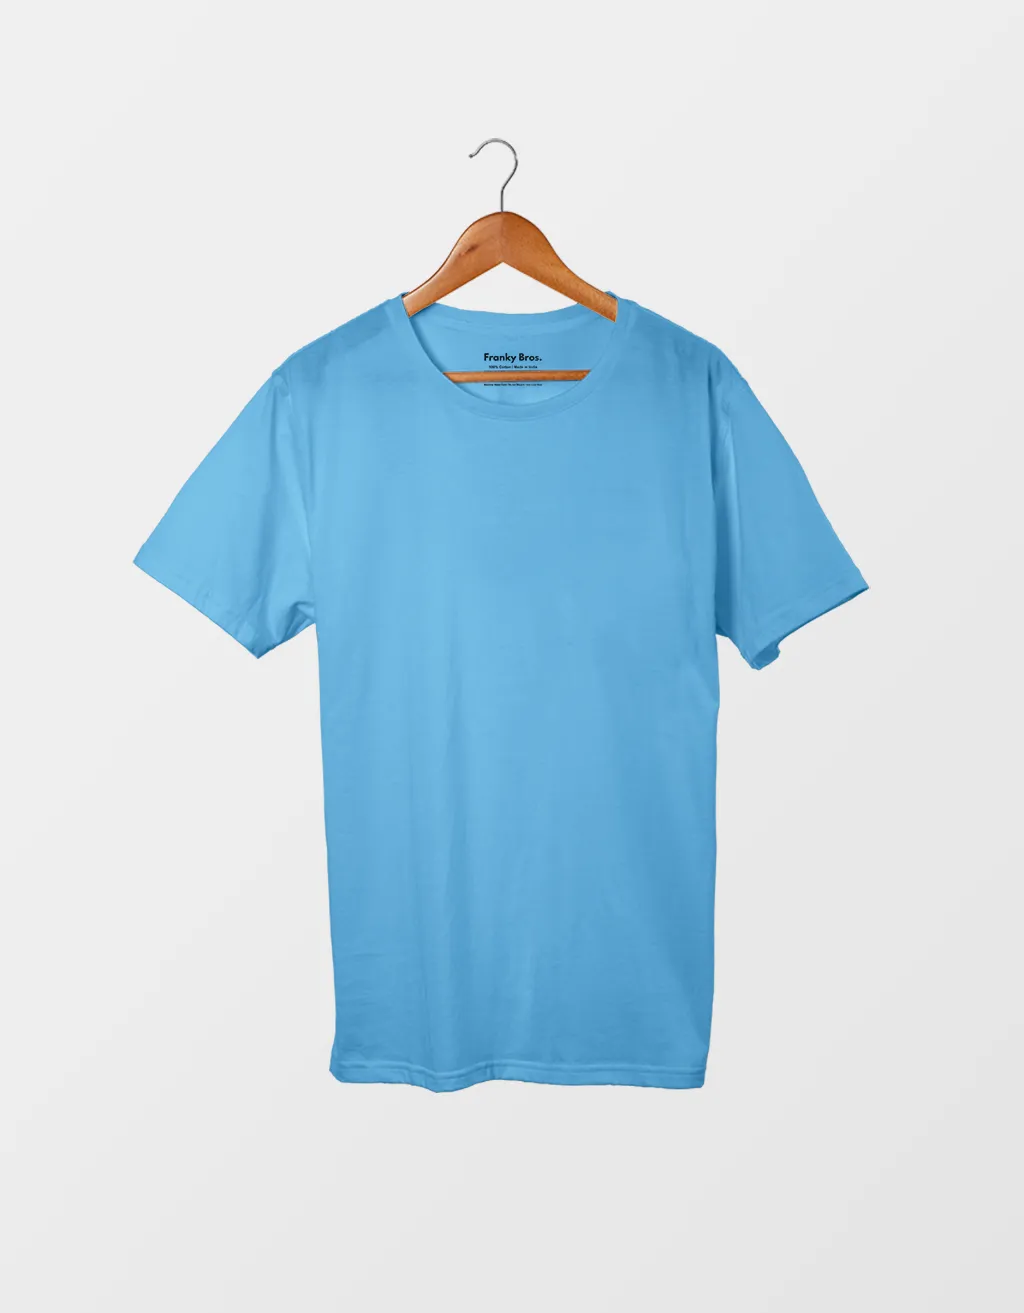 light blue t shirt womens buy online